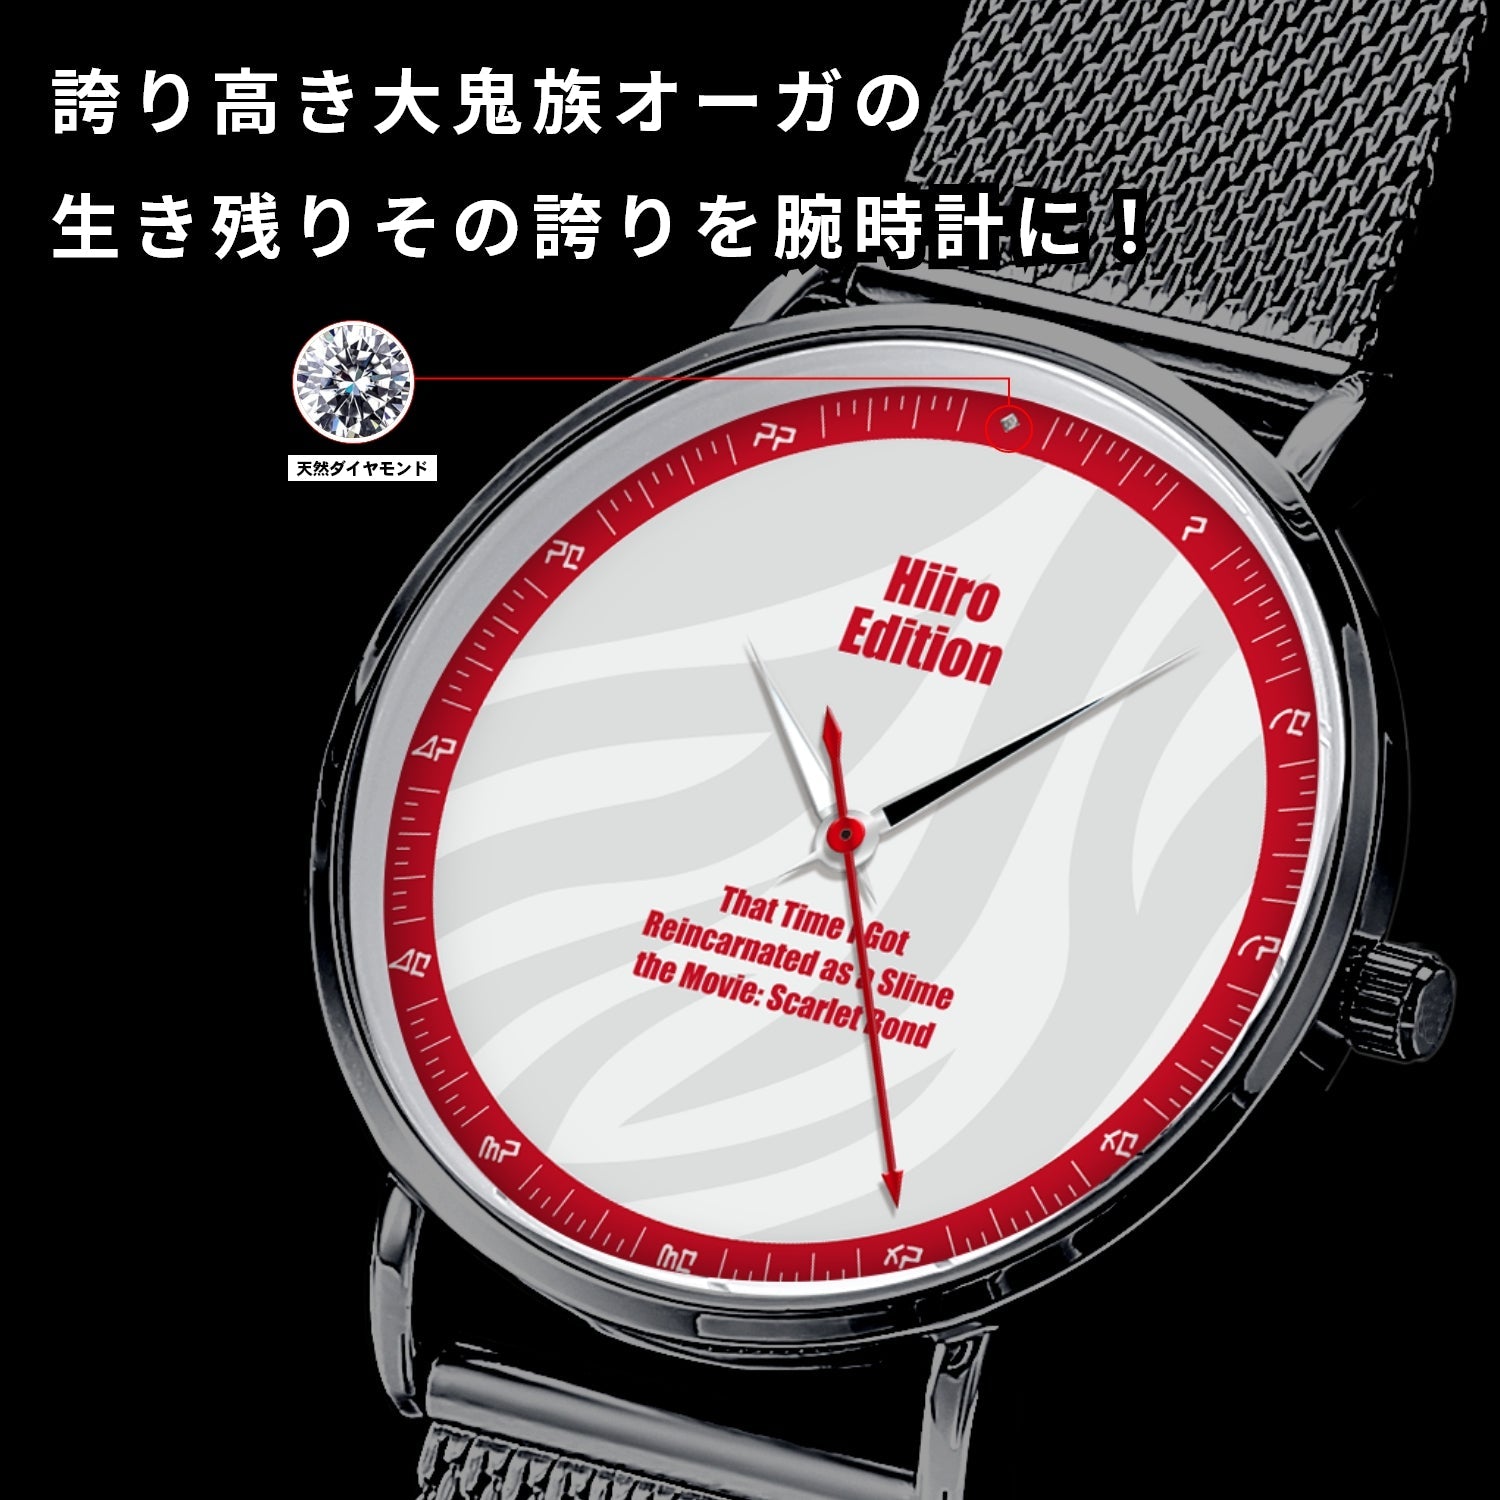 「劇場版 転生したらスライムだった件 紅蓮の絆編」オフィシャルソーラー腕時計 ヒイロ・エディション - 公式通販サイト「アニメコレクション/Anime Collection」